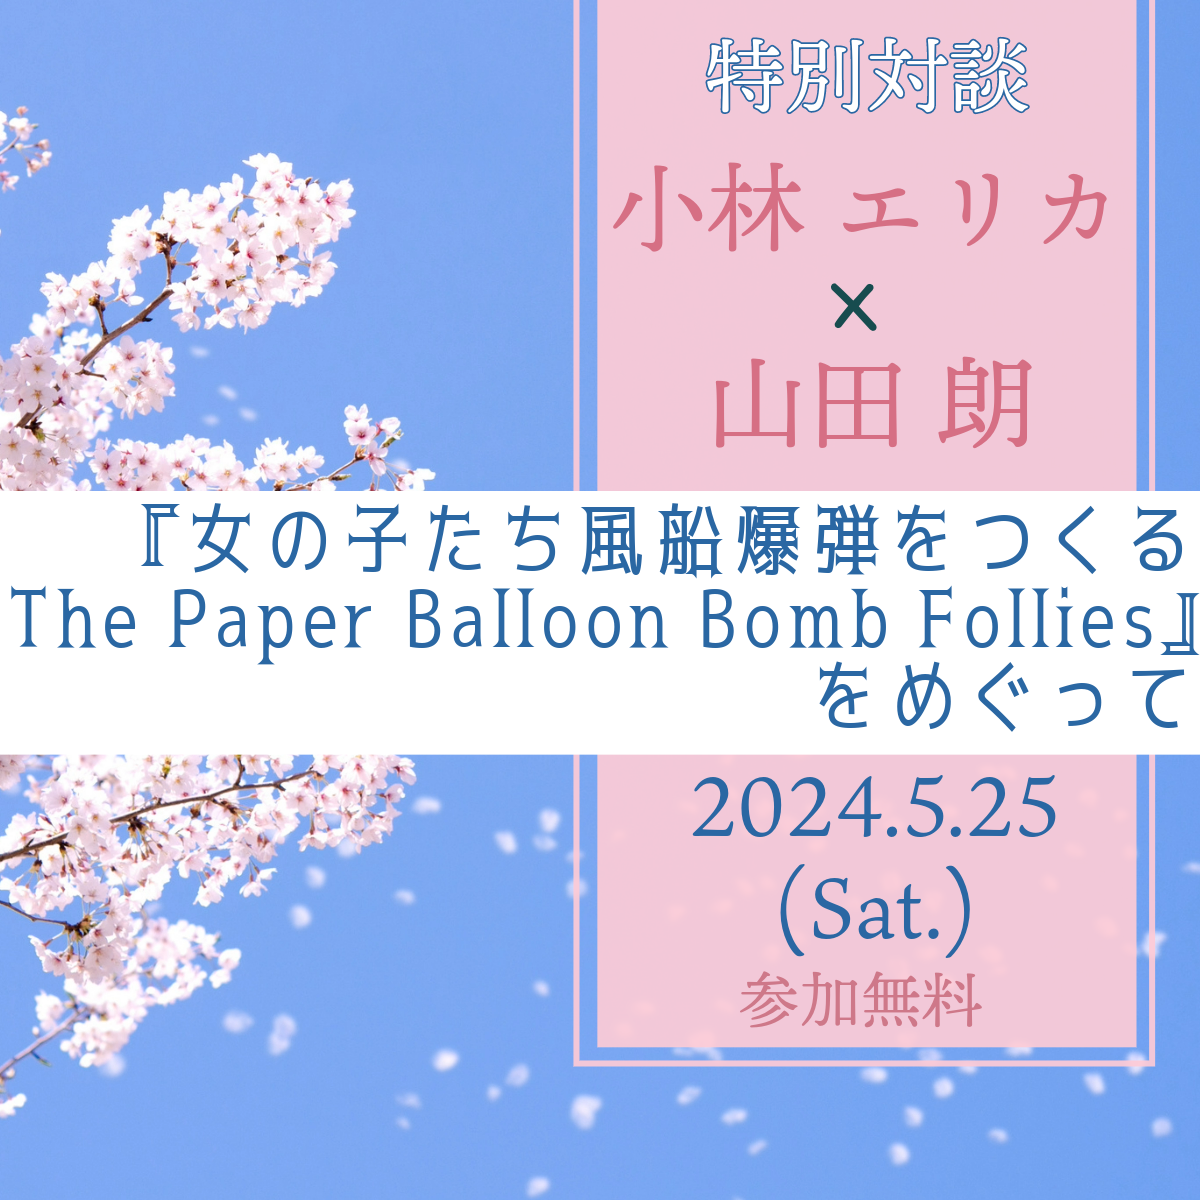 【特別対談 イベント】「『女の子たち風船爆弾をつくるThe Paper Balloon Bomb Follies』をめぐって」開催 のご案内